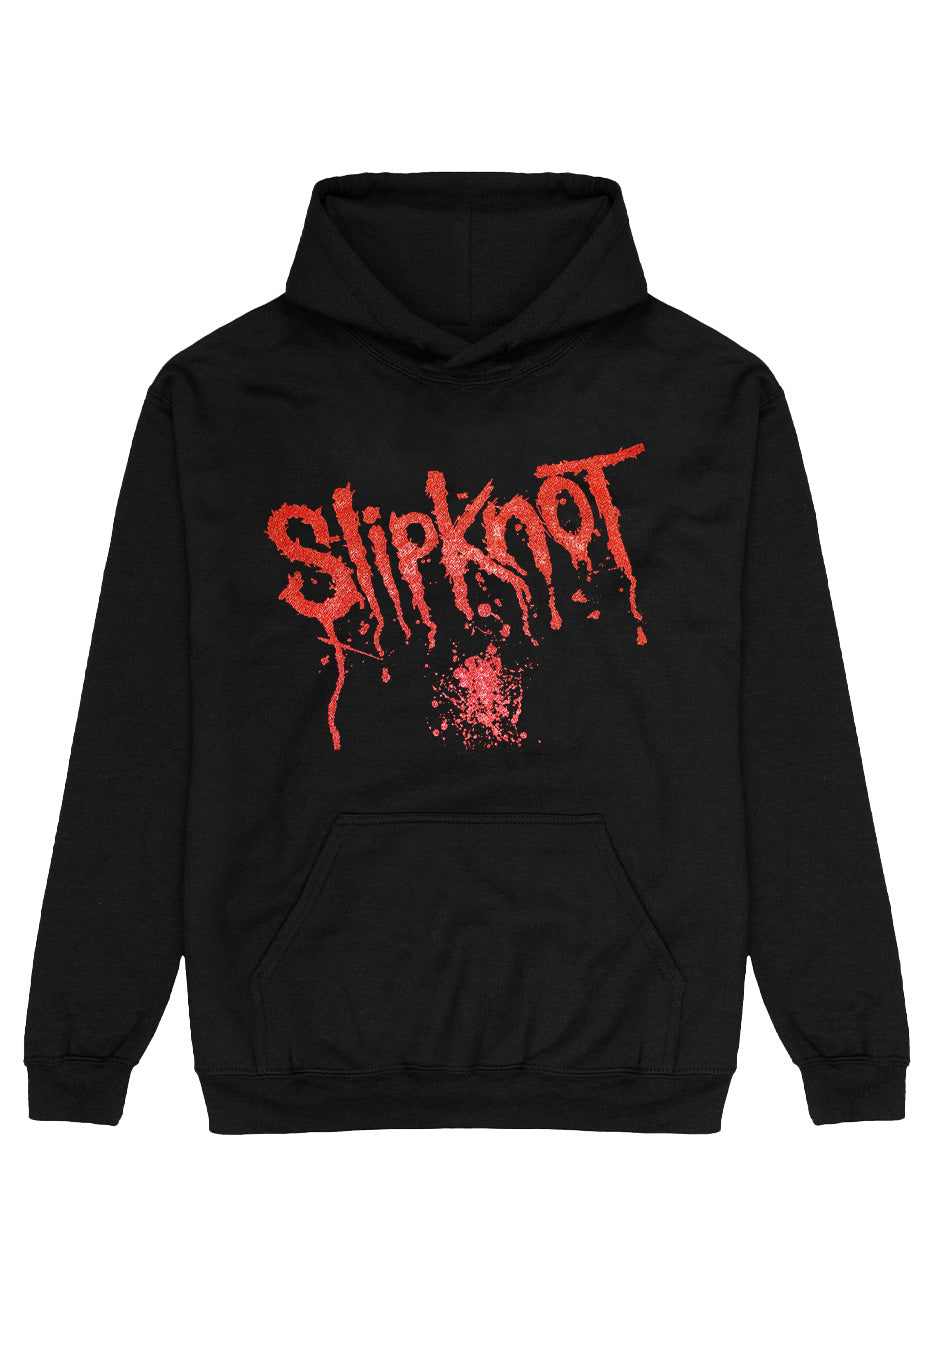 Slipknot - Splatter - Hoodie